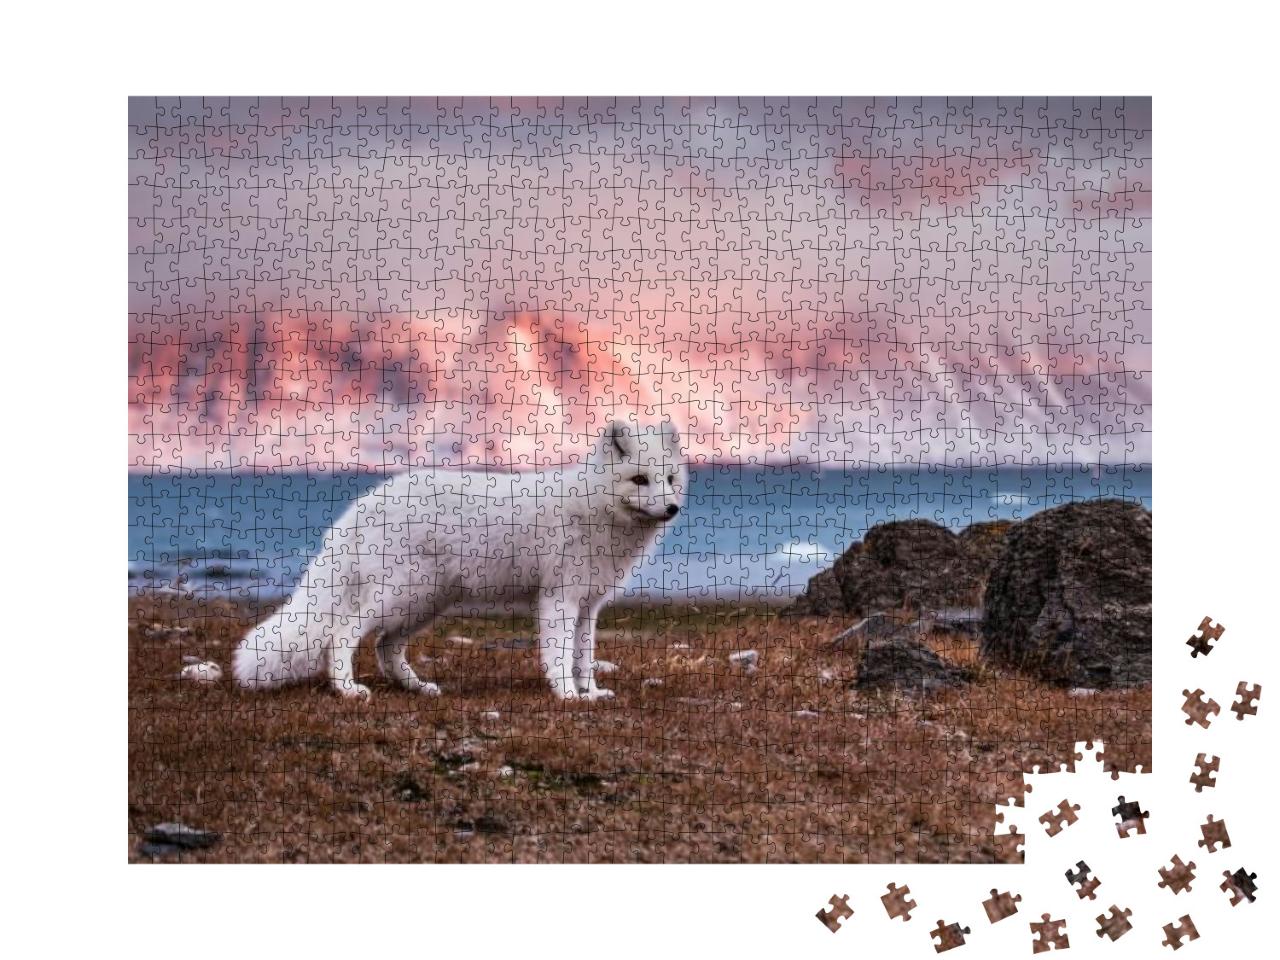 Puzzle 1000 Teile „Polarfuchs in der Herbstsonne“